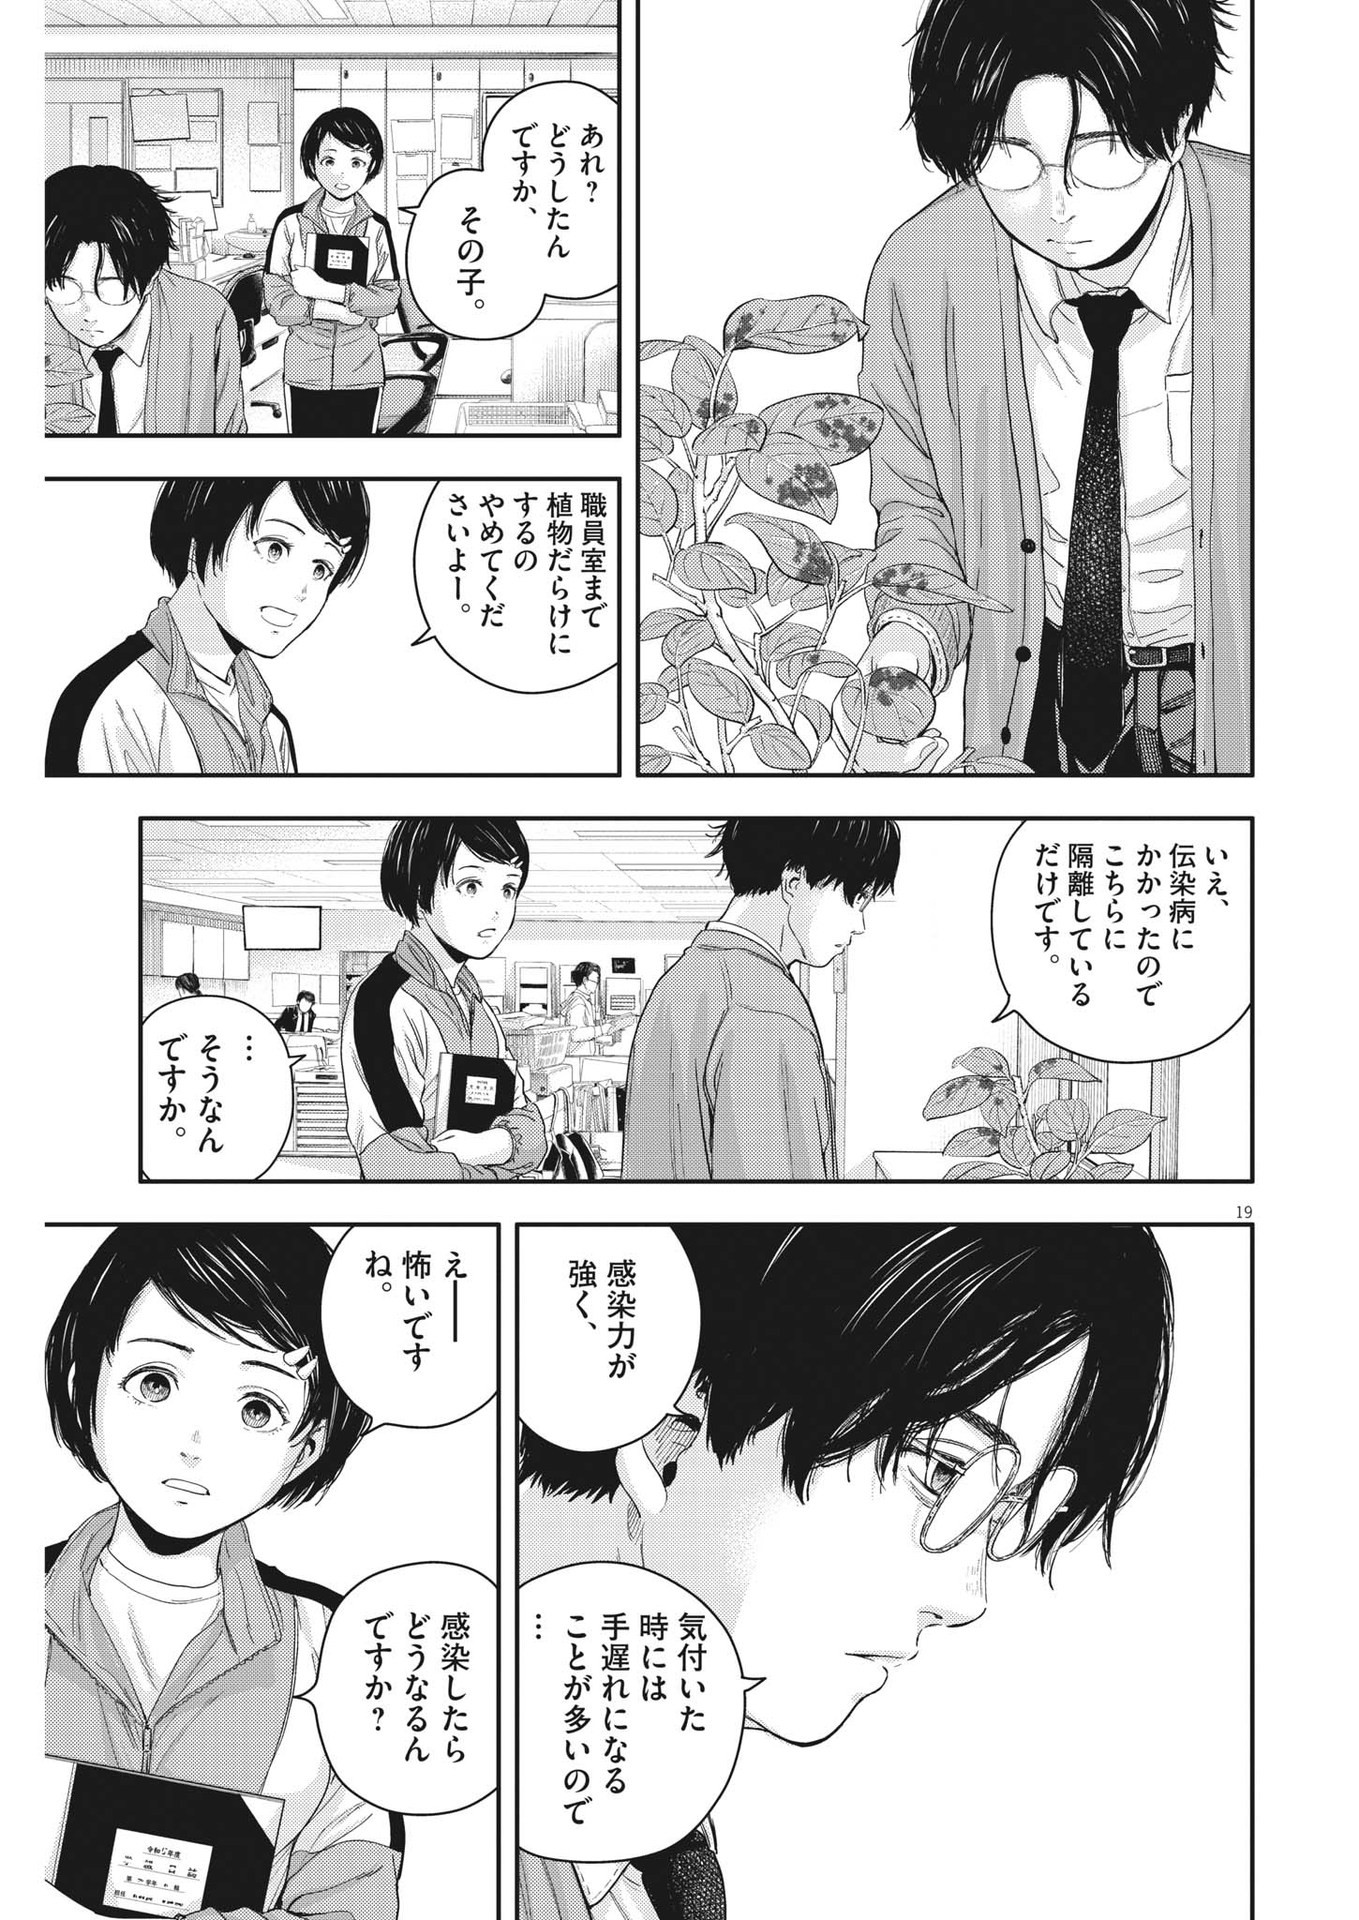 Yumenashi-sensei no Shinroshidou - Chapter 22 - Page 19